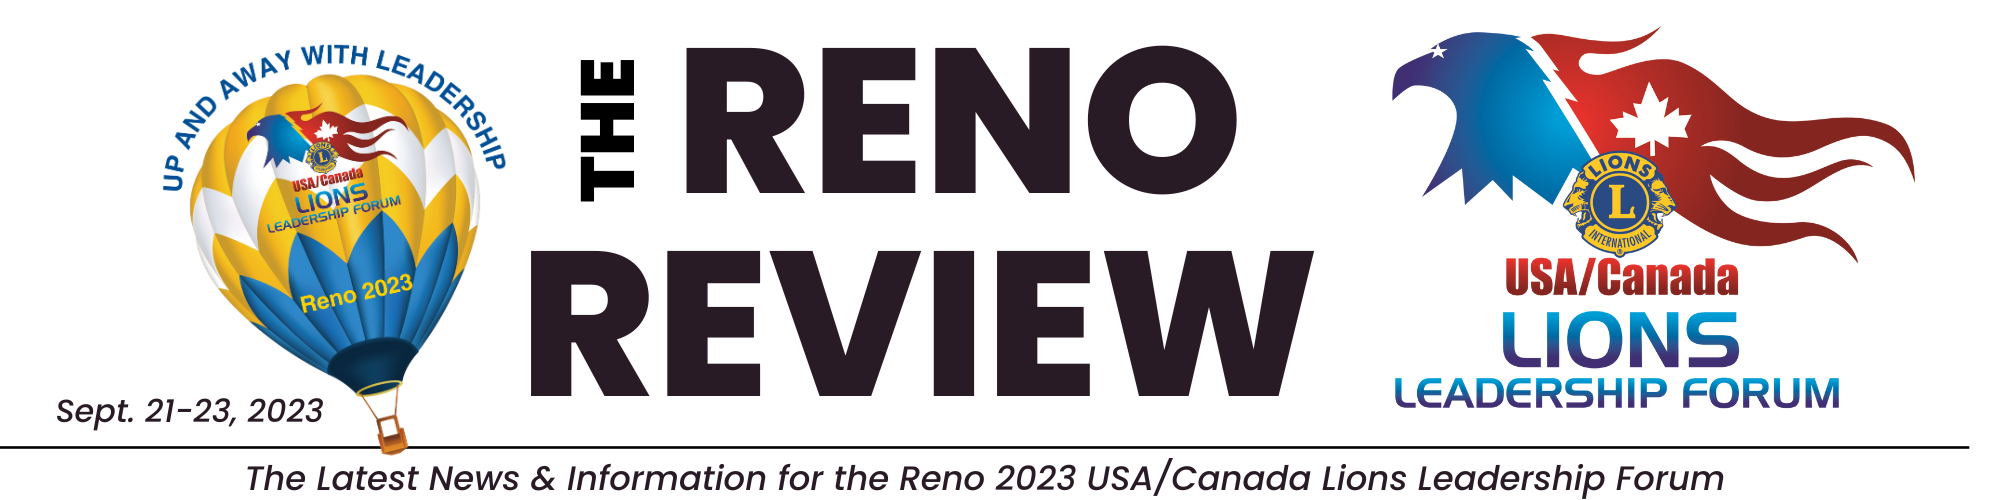 Reno Review header